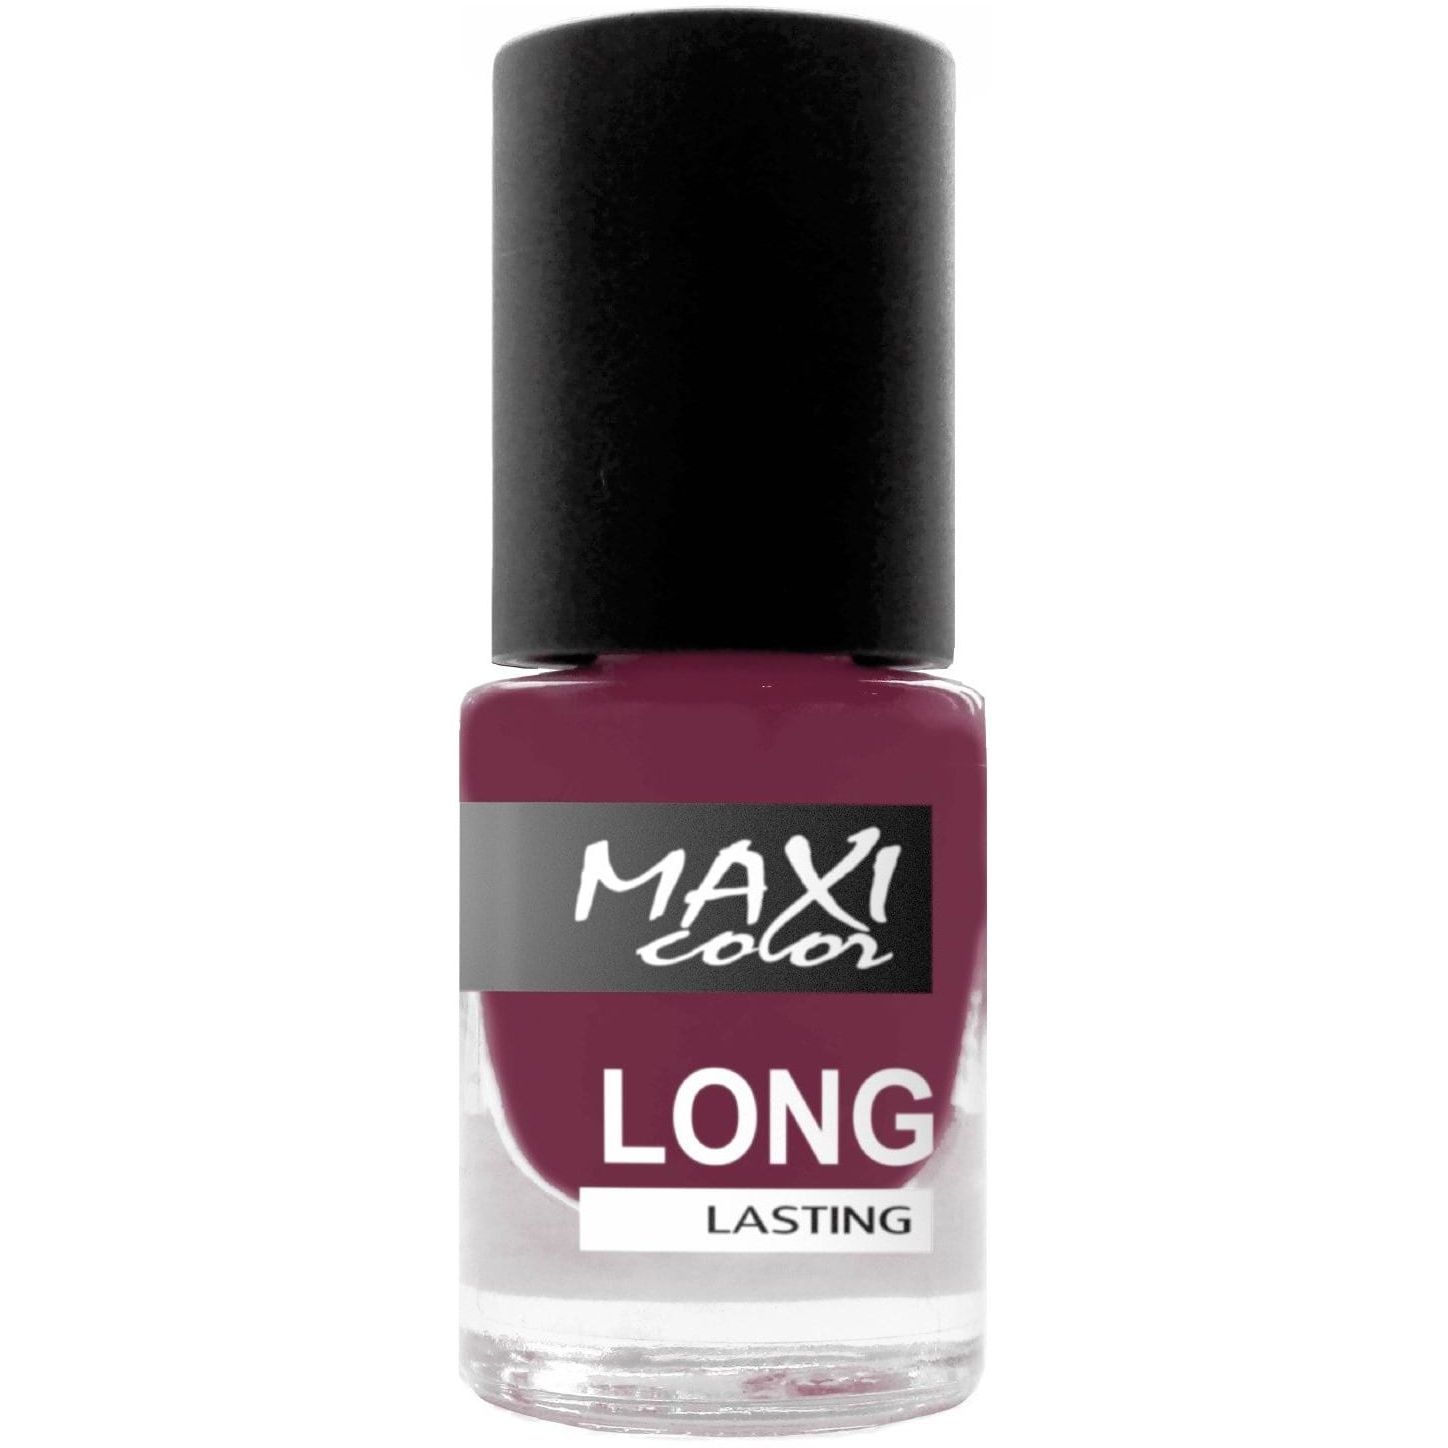 Лак для ногтей Maxi Color Long Lasting тон 089, 6 мл - фото 1